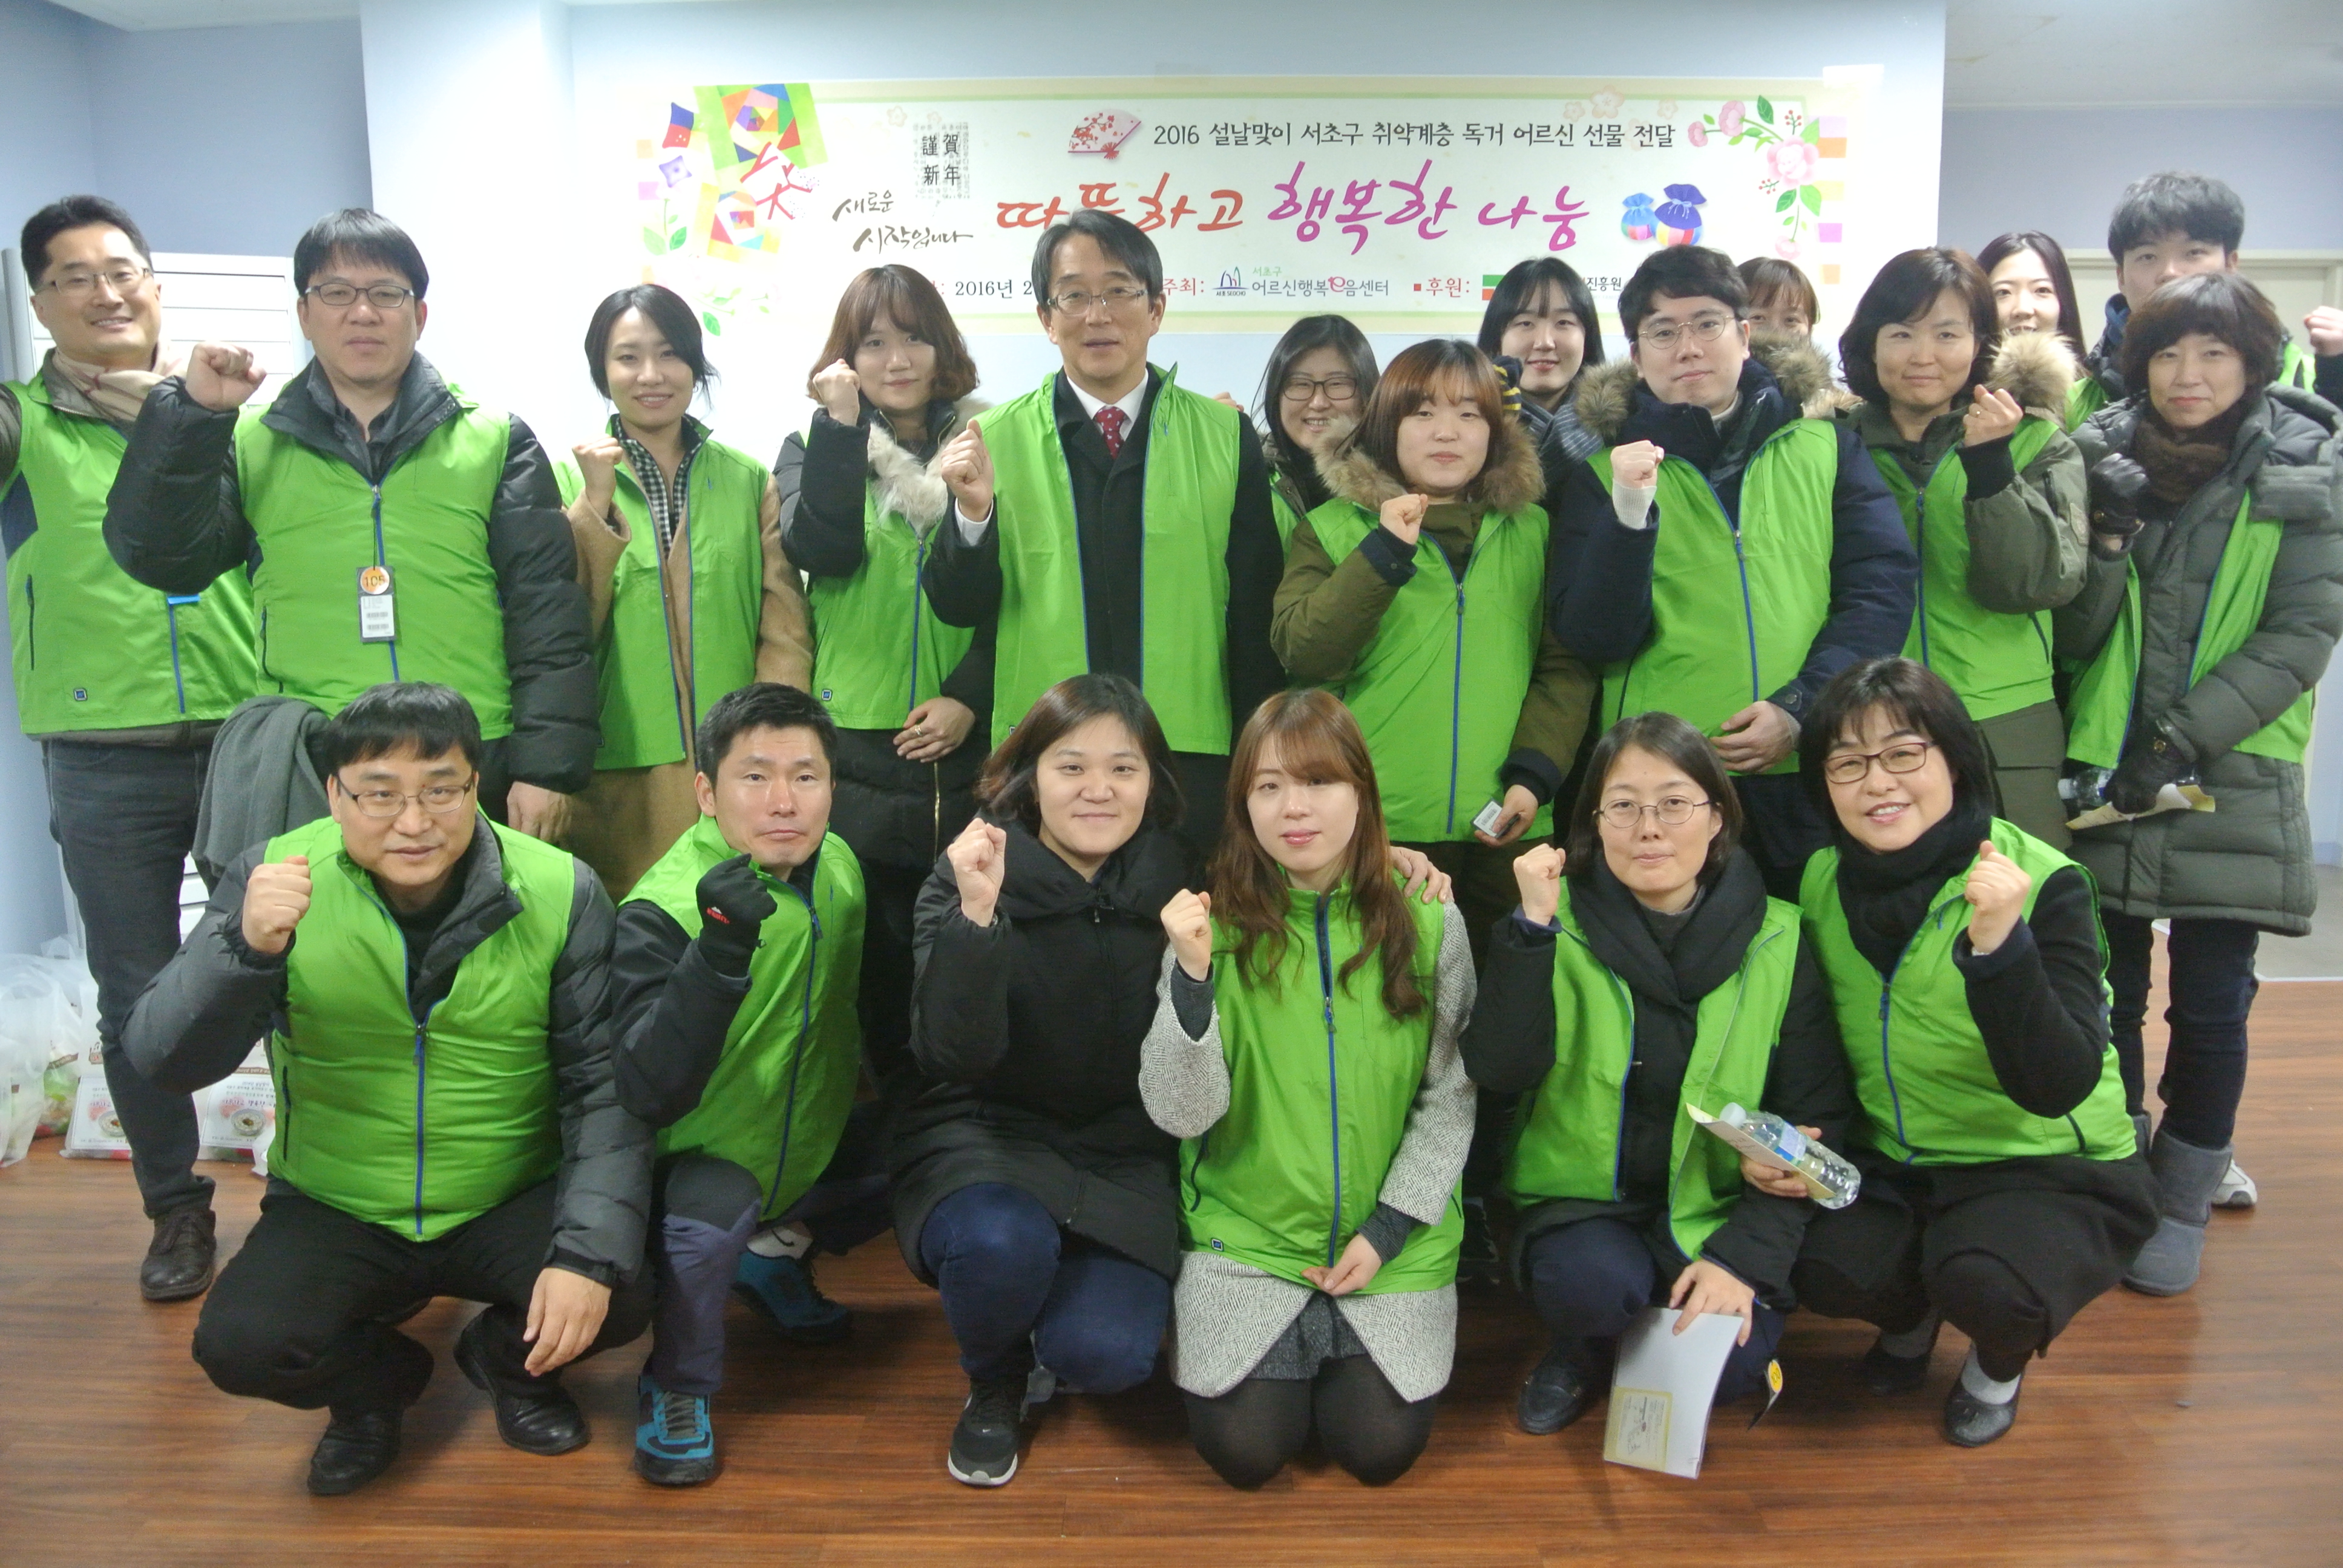 서초구어르신행복e음센터와 함께하는 2016년 설맞이 사회공헌활동